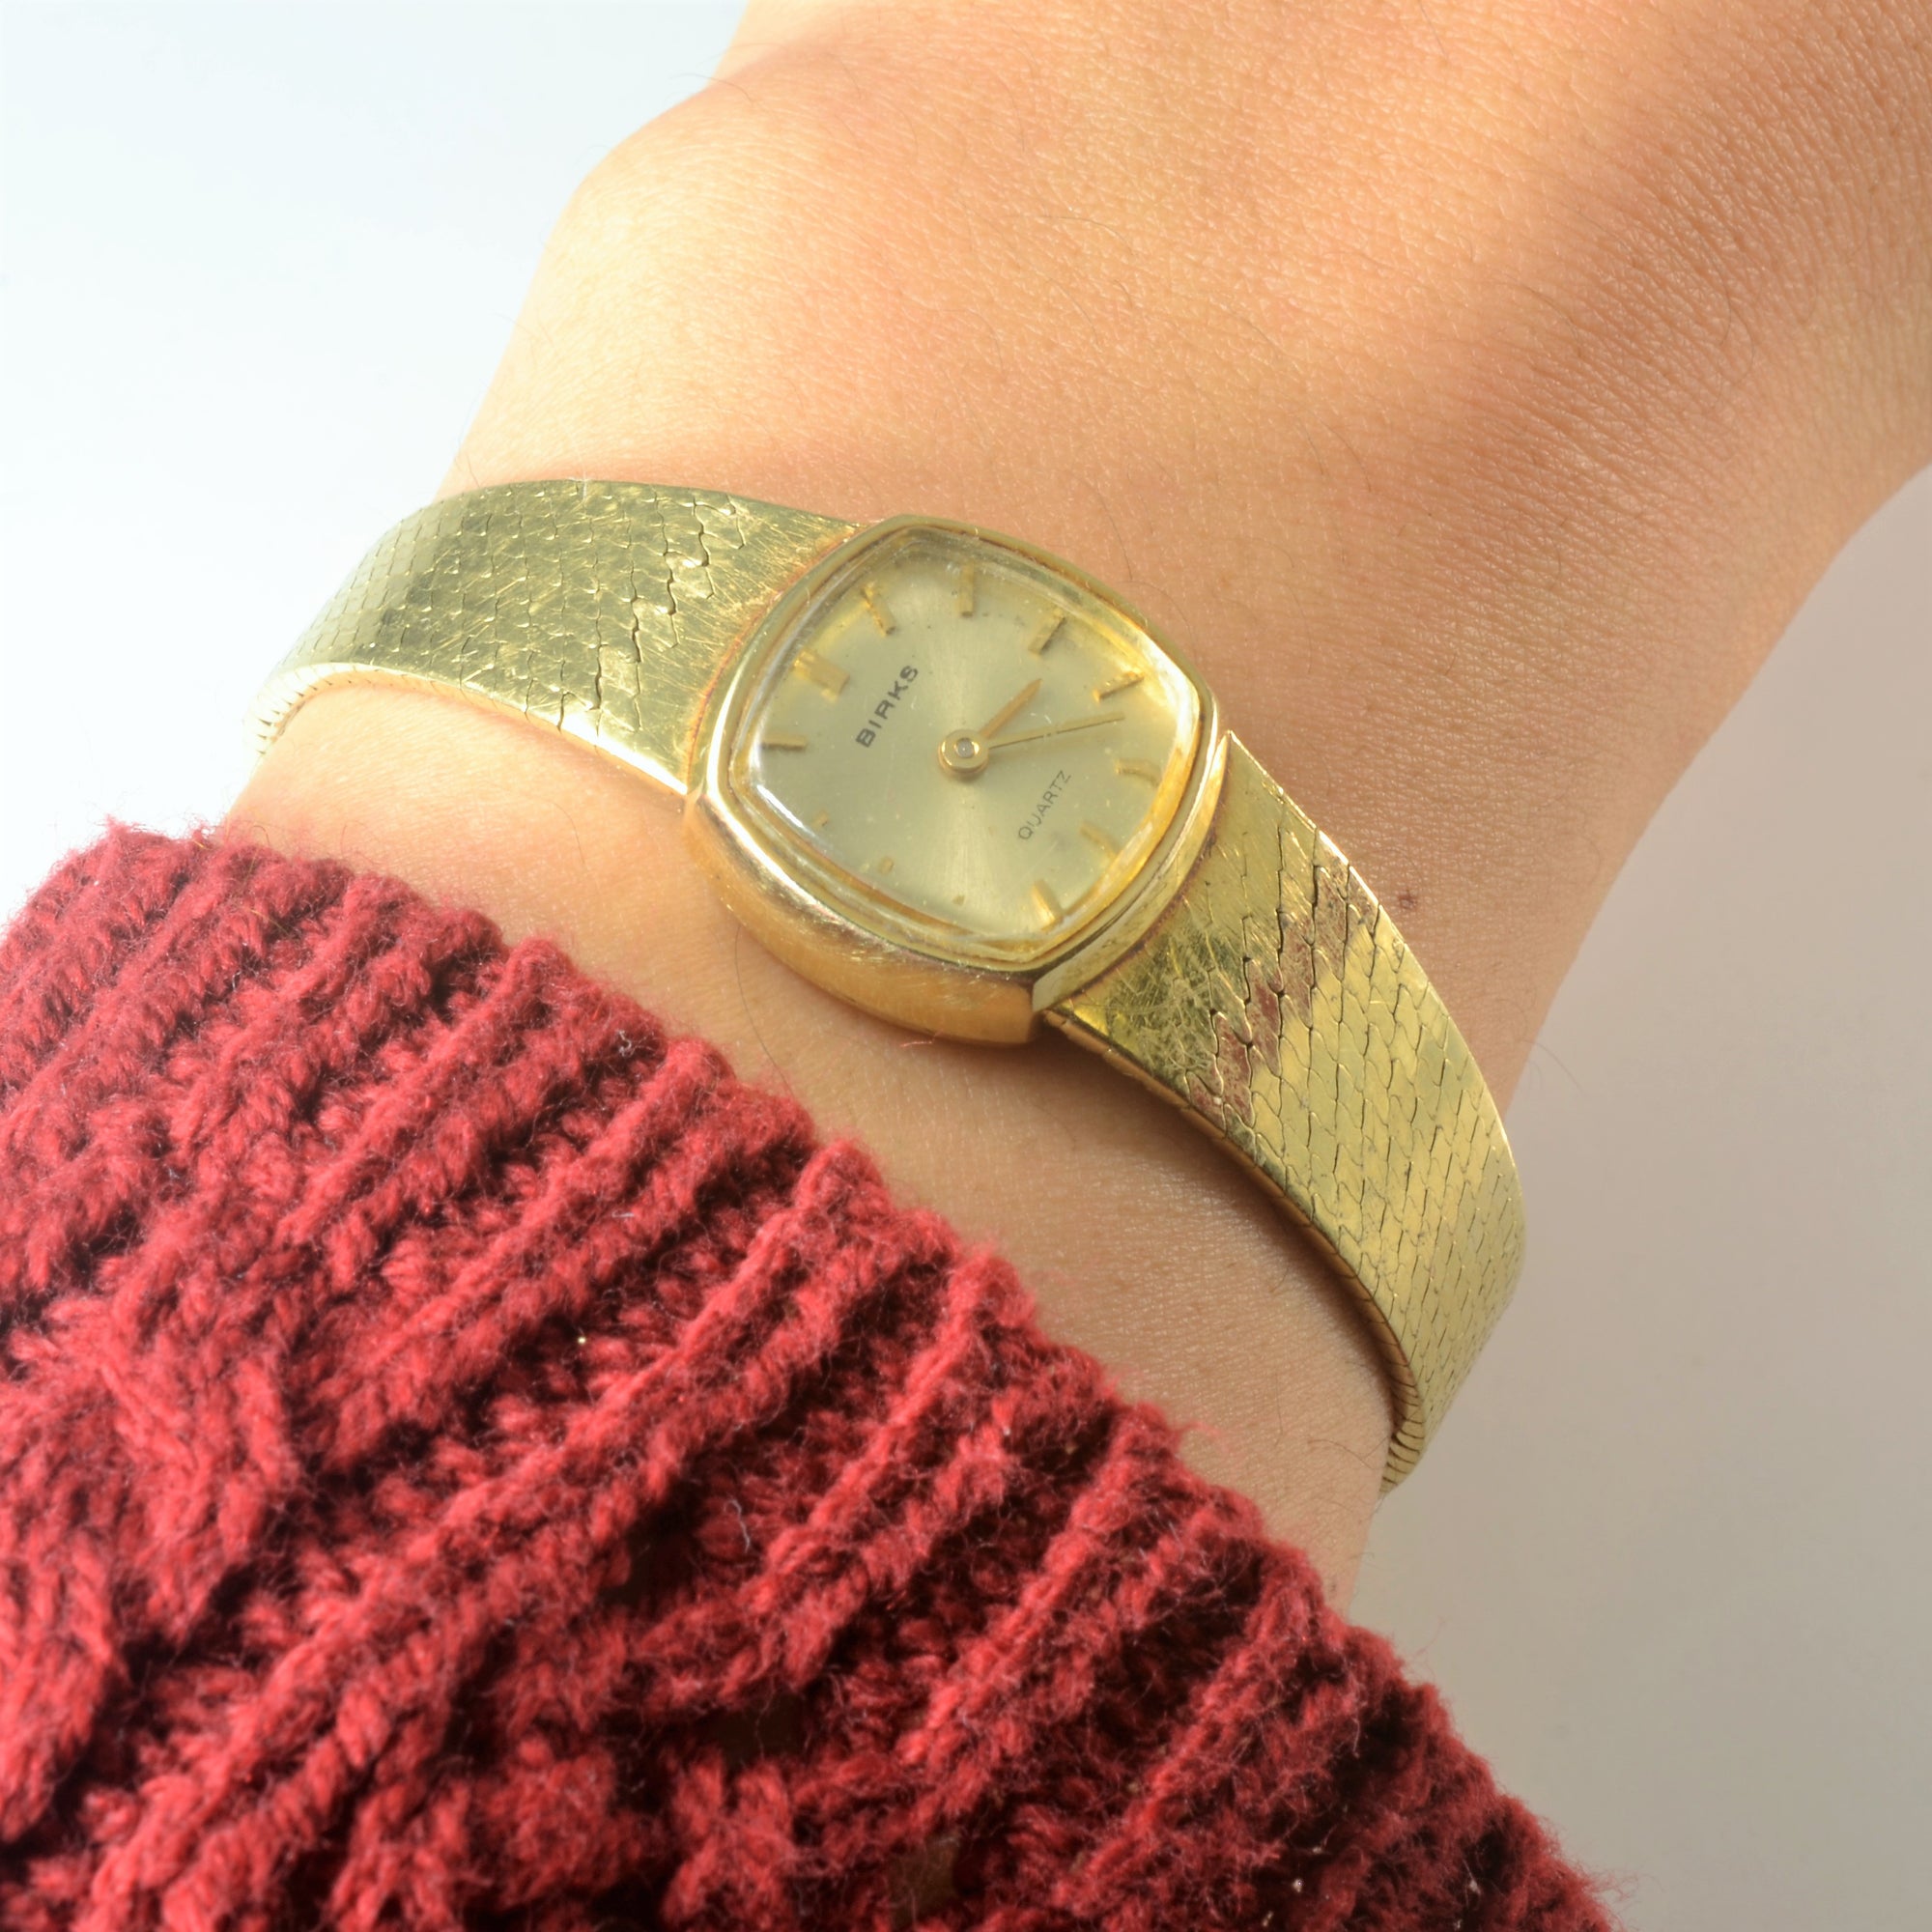 'Birks' 14k gold watch